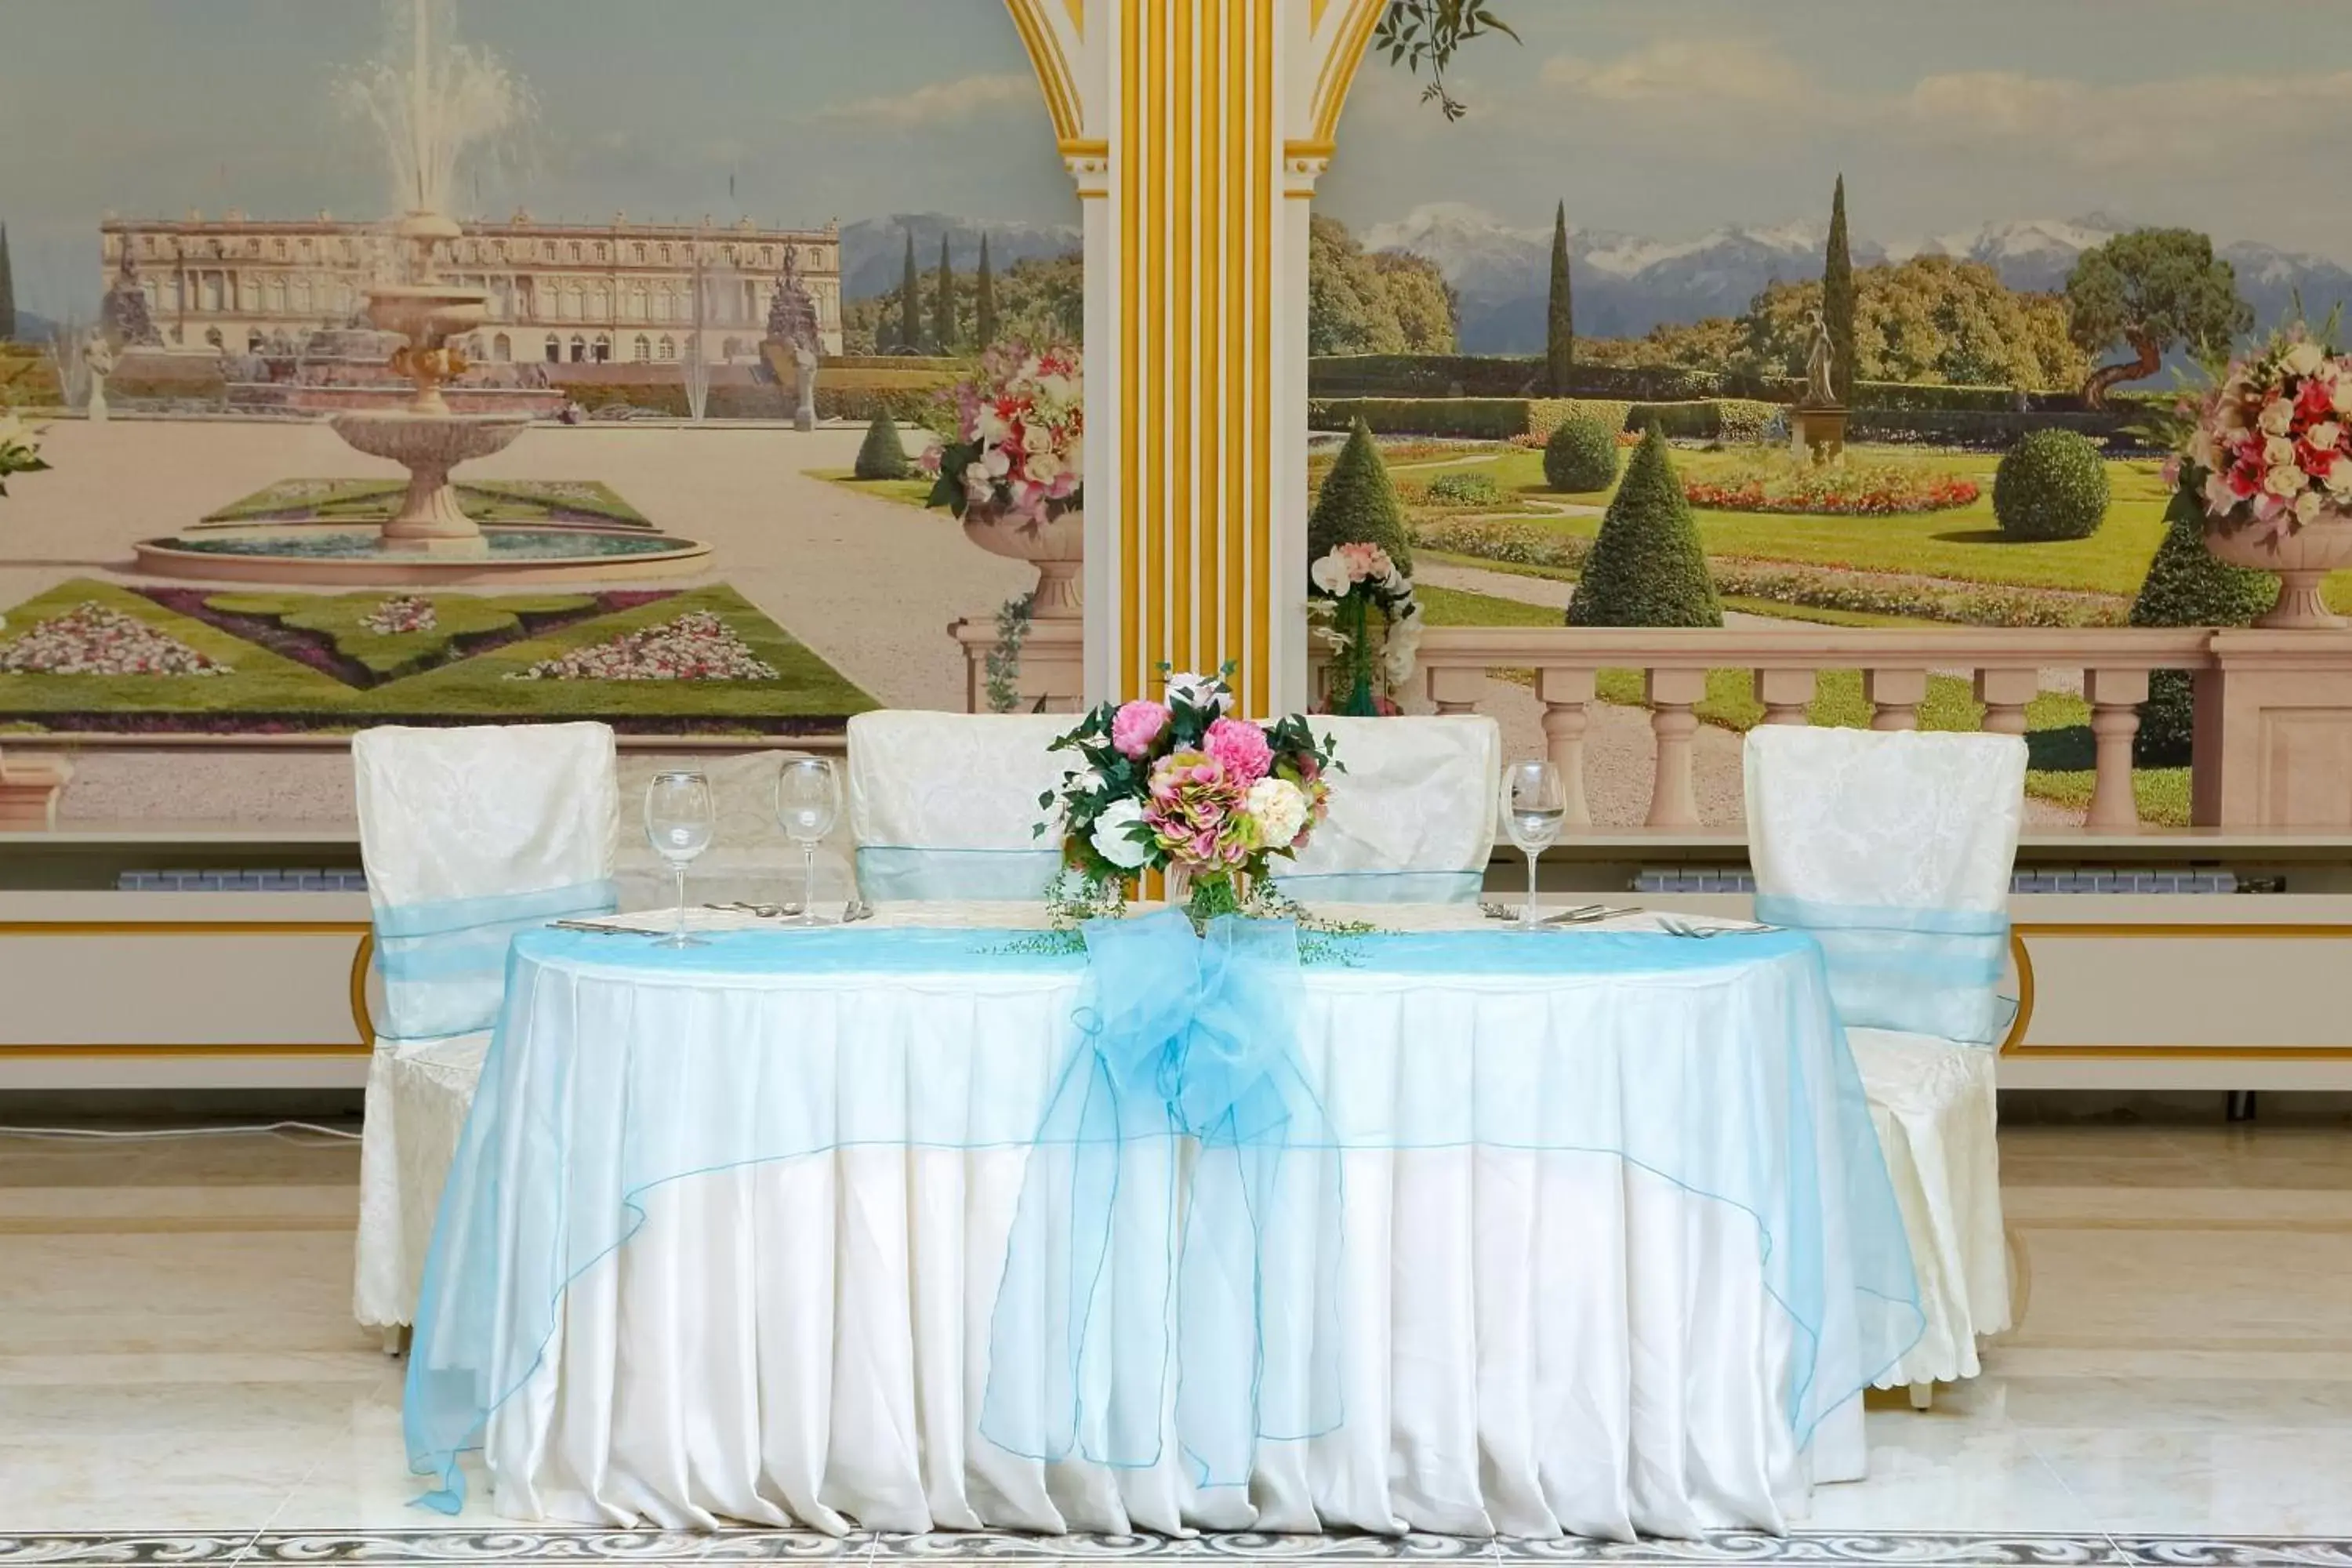 Banquet/Function facilities, Banquet Facilities in Hotel Montecito